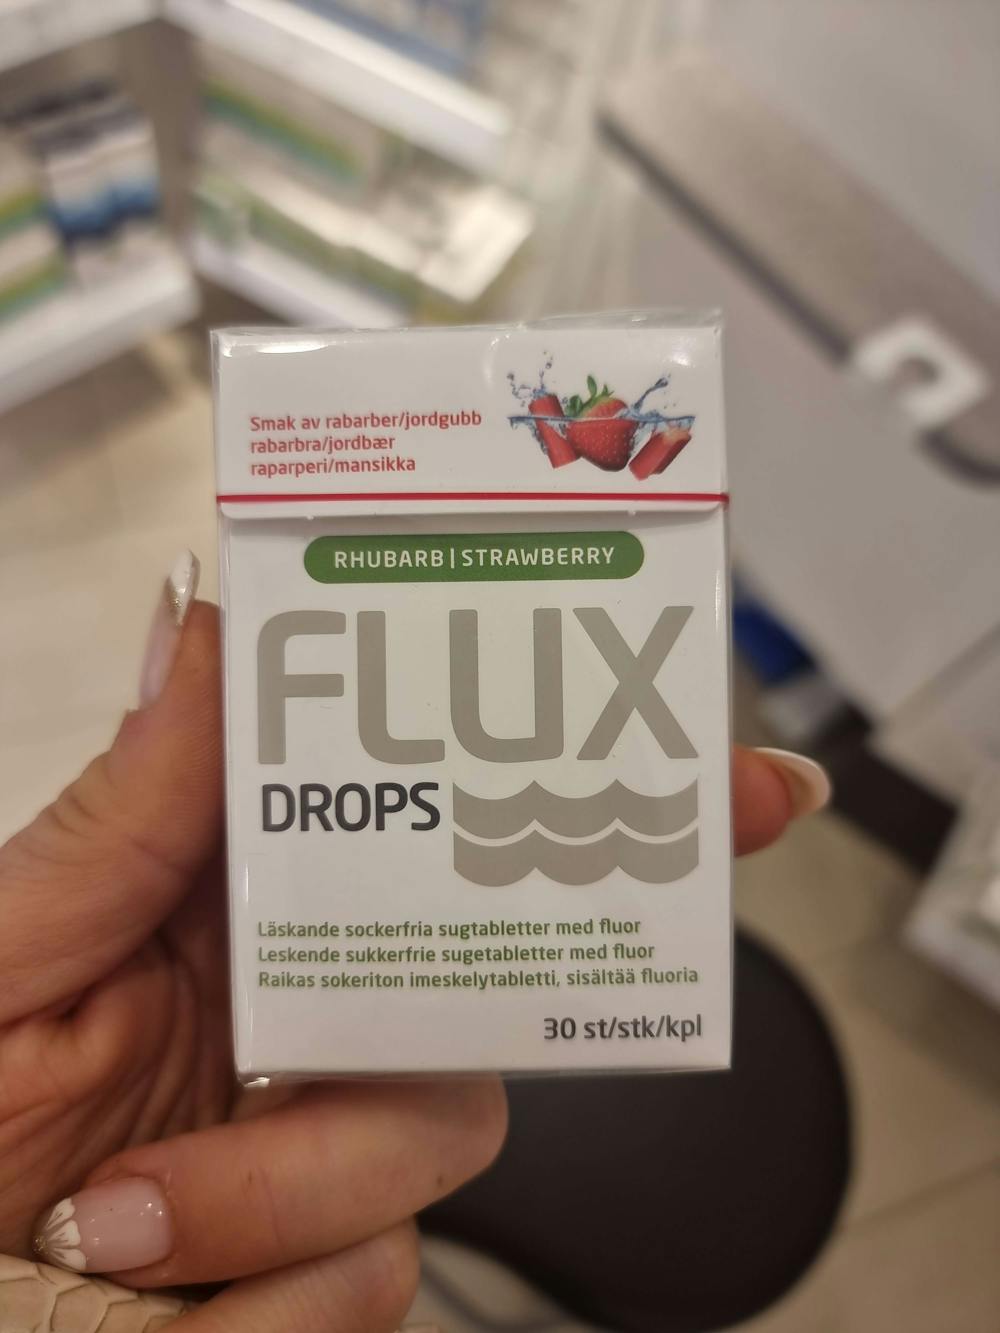 Drops, Flux